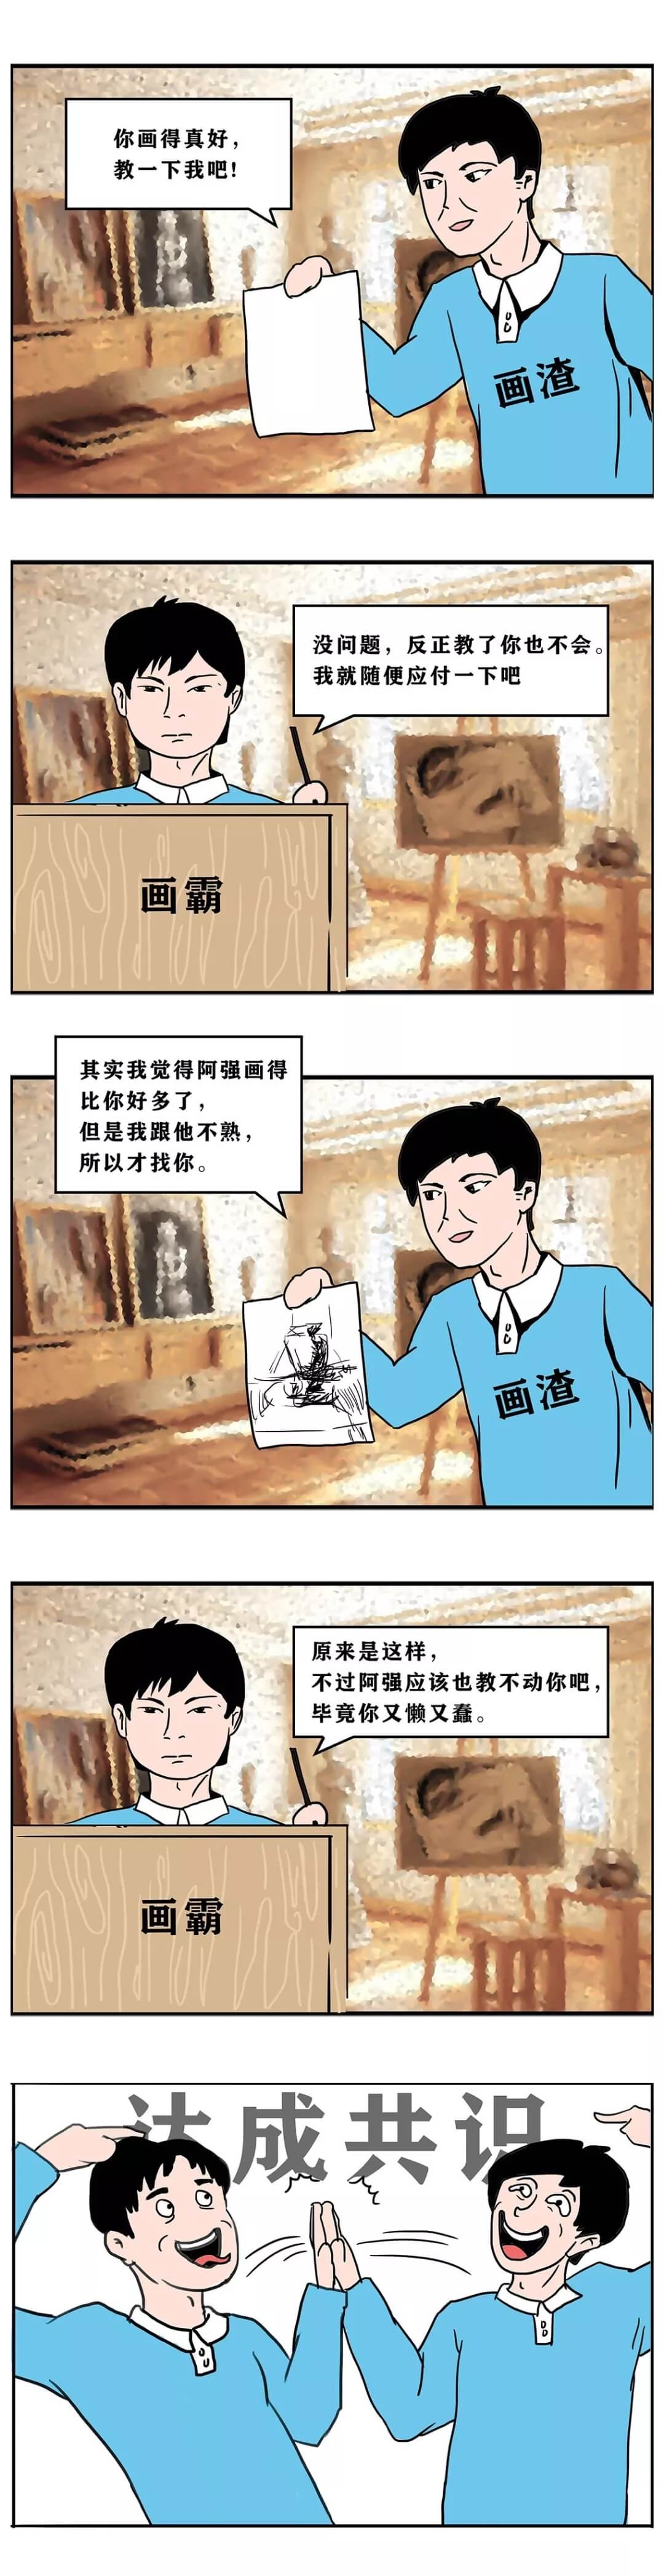 假如北京画室里每位同学都说真话会是什么样子？